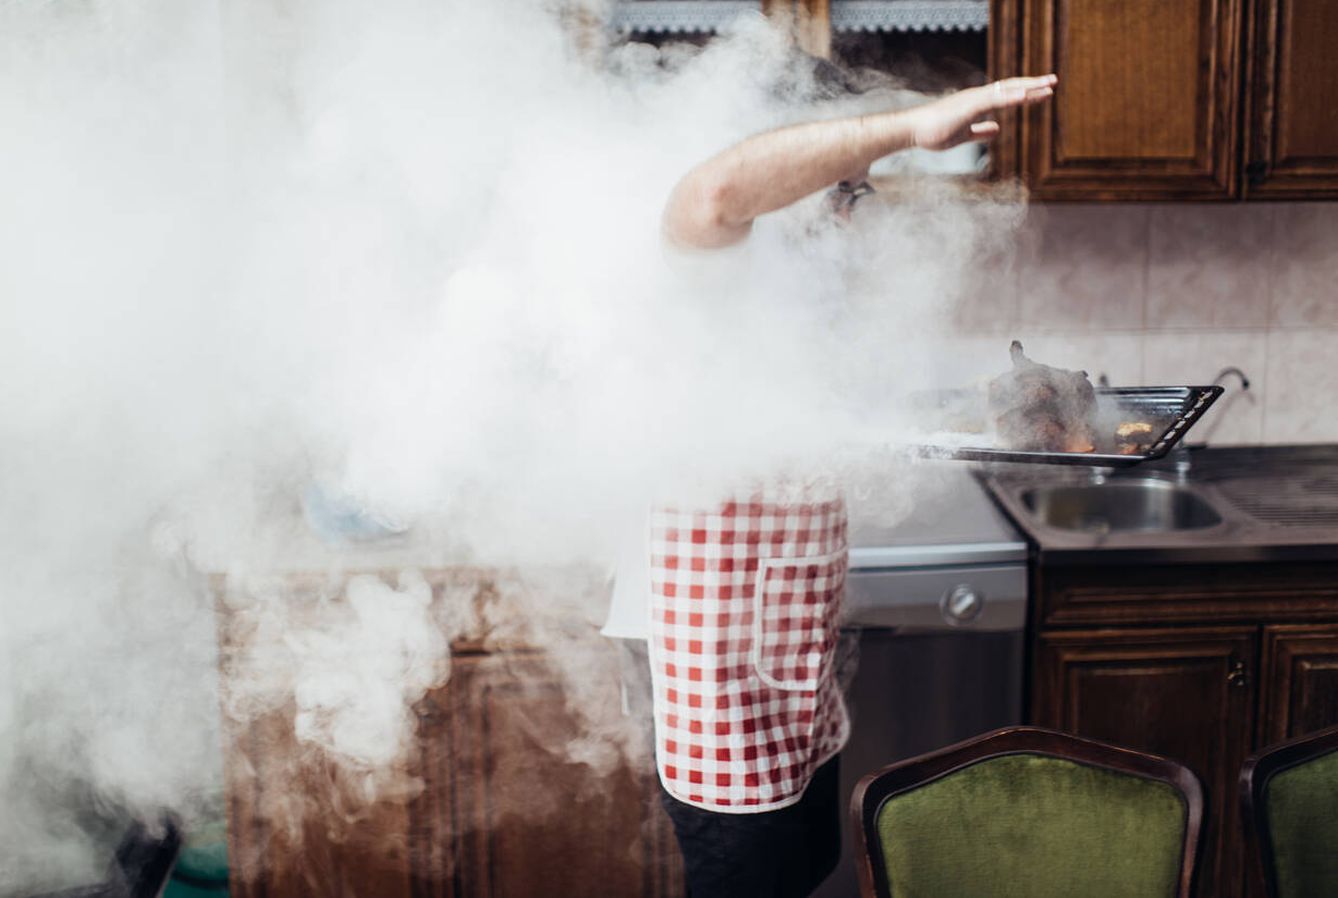 El humo del cocinado es perjudicial. (iStock)